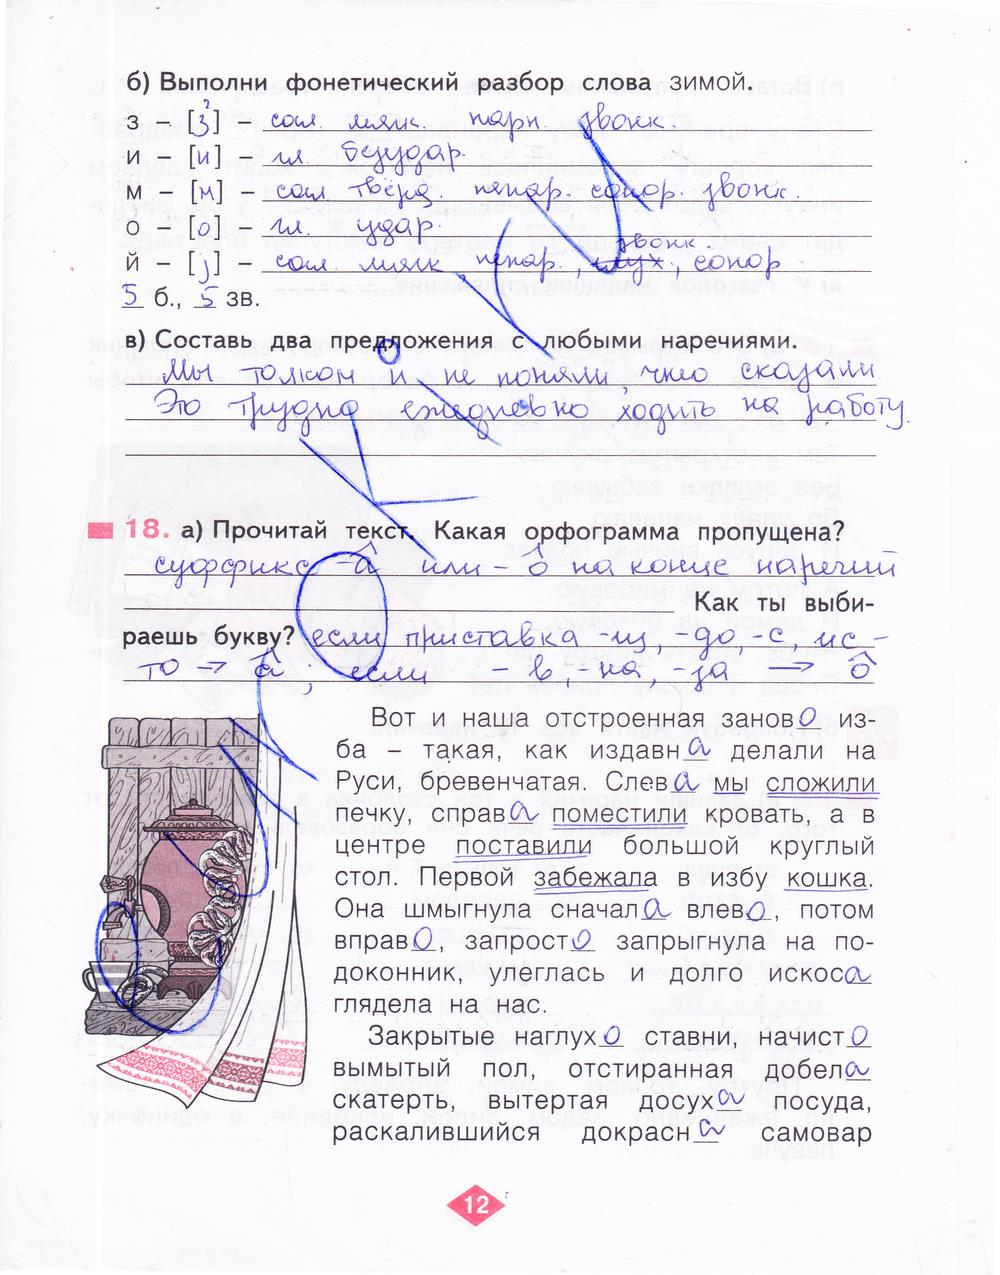 гдз 4 класс рабочая тетрадь часть 4 страница 12 русский язык Нечаева, Воскресенская